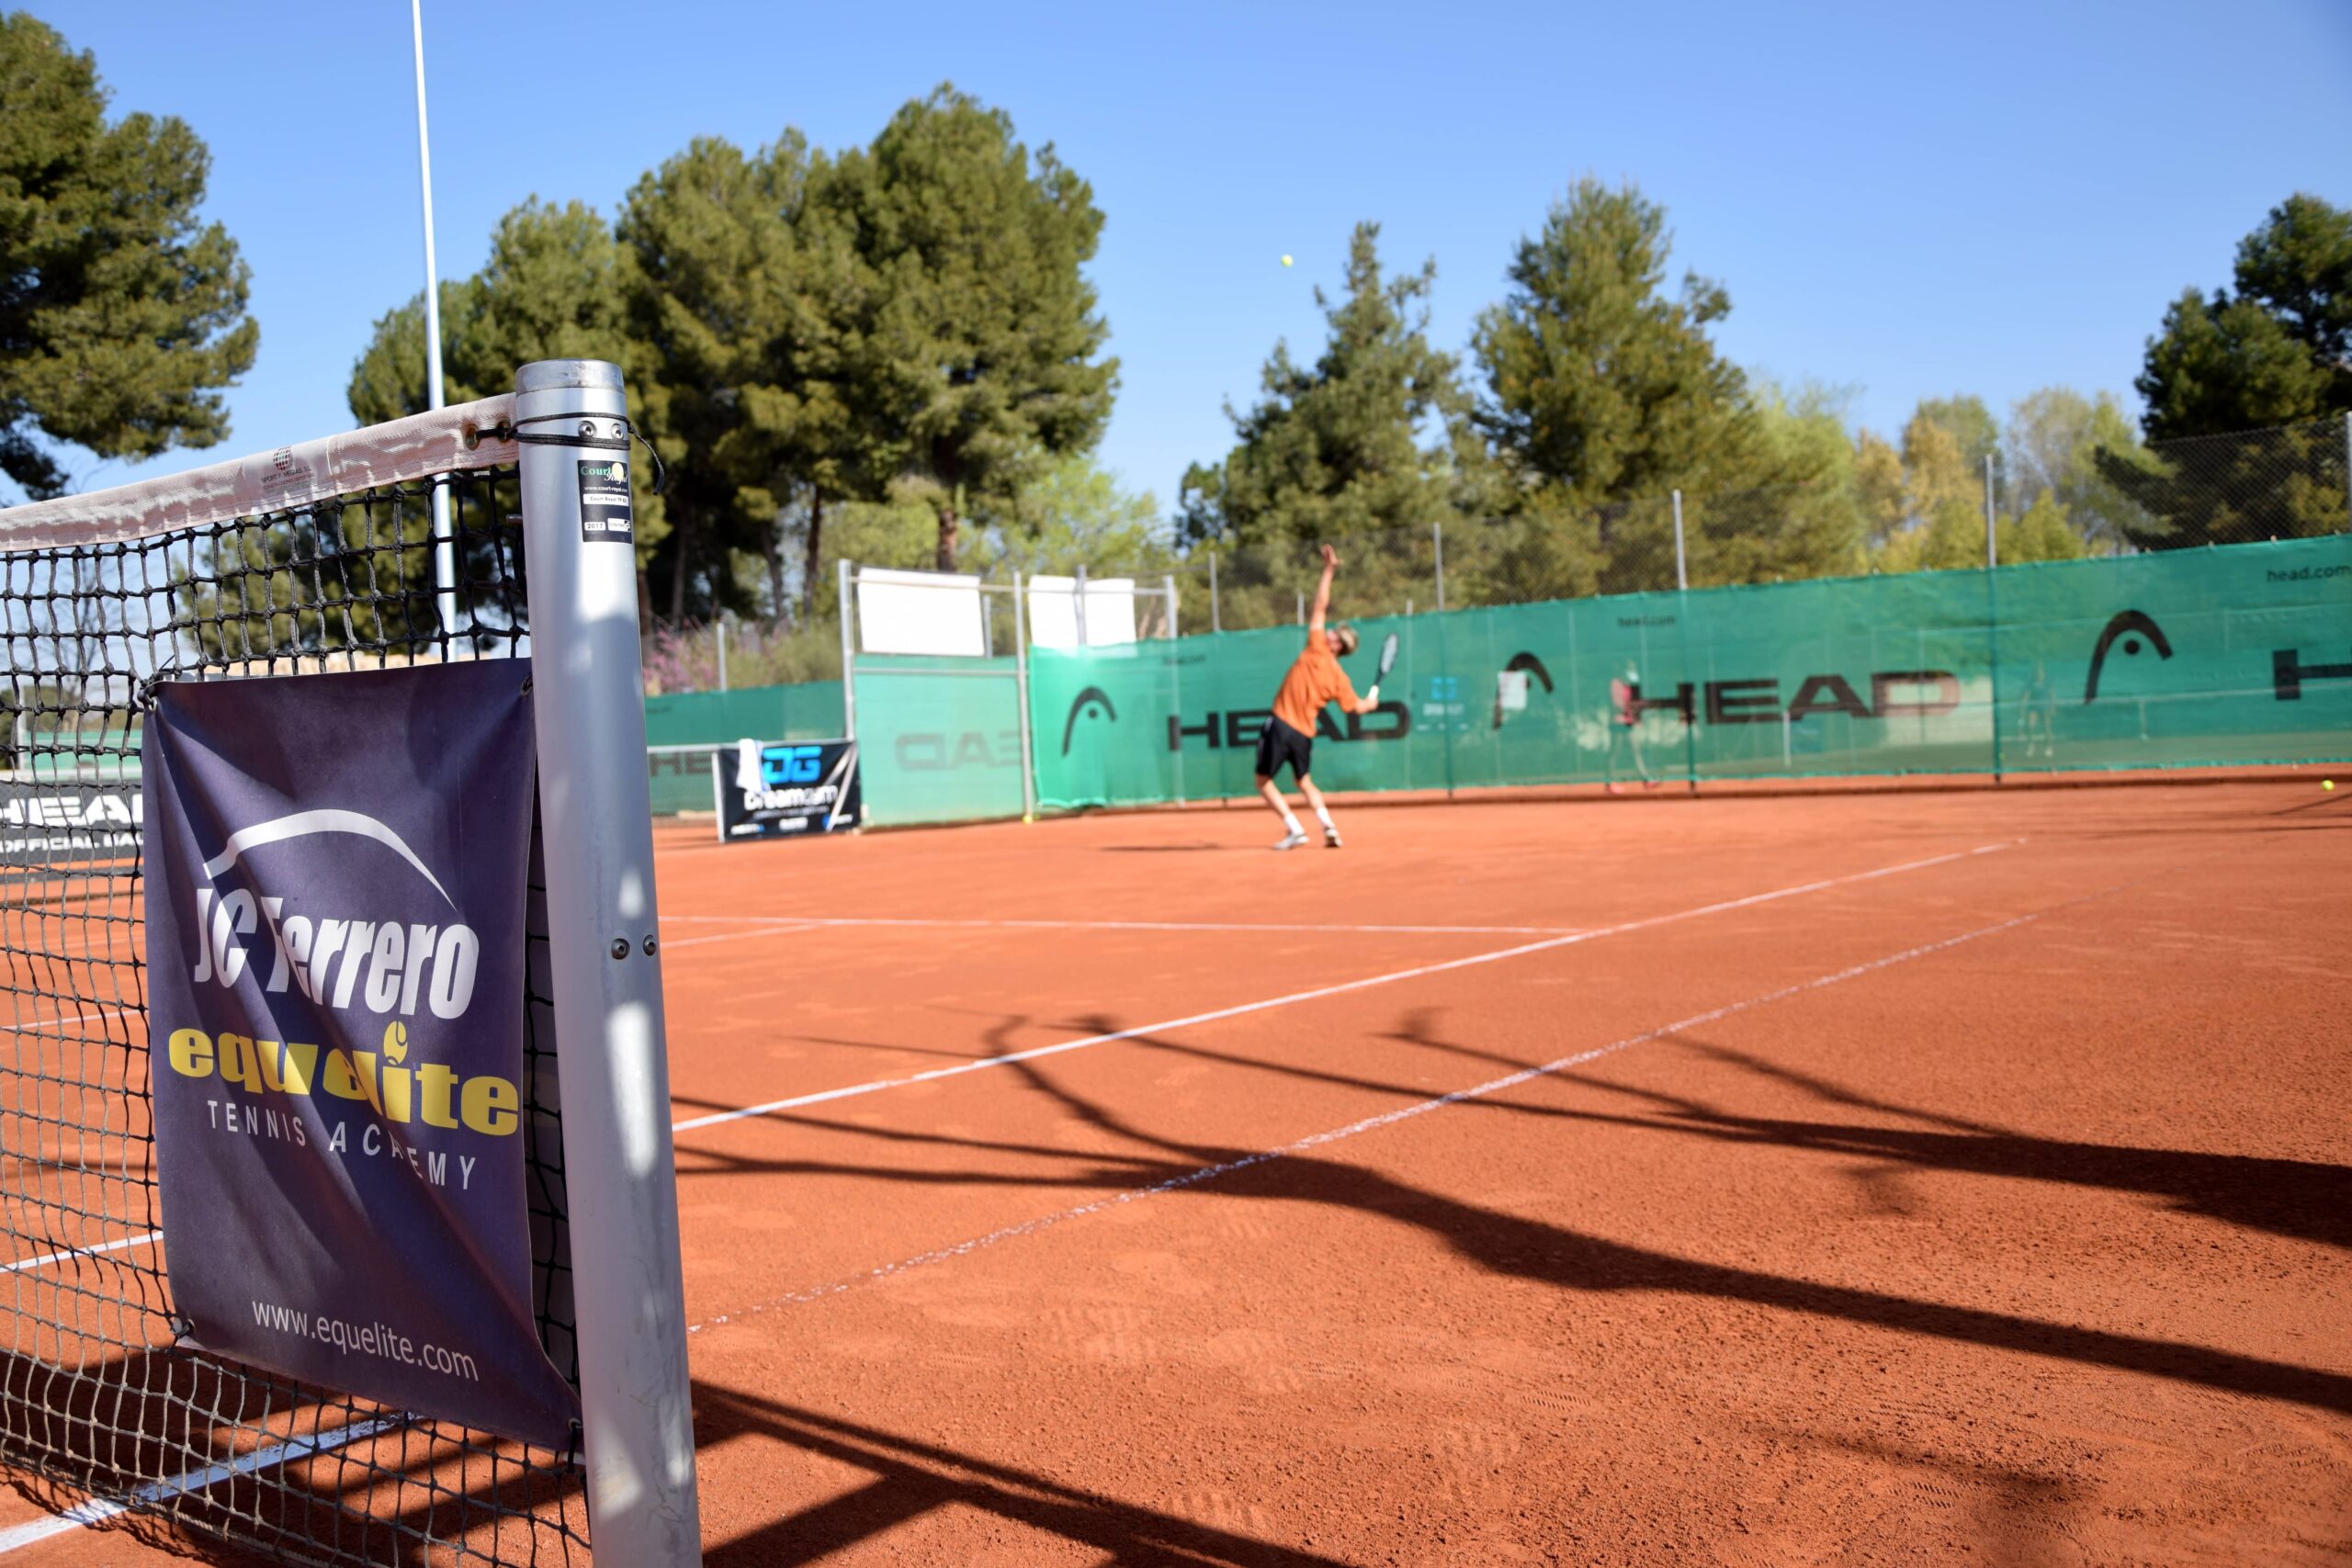 Arranca la XVIII edición del ITF Junior G1 Juan Carlos Ferrero